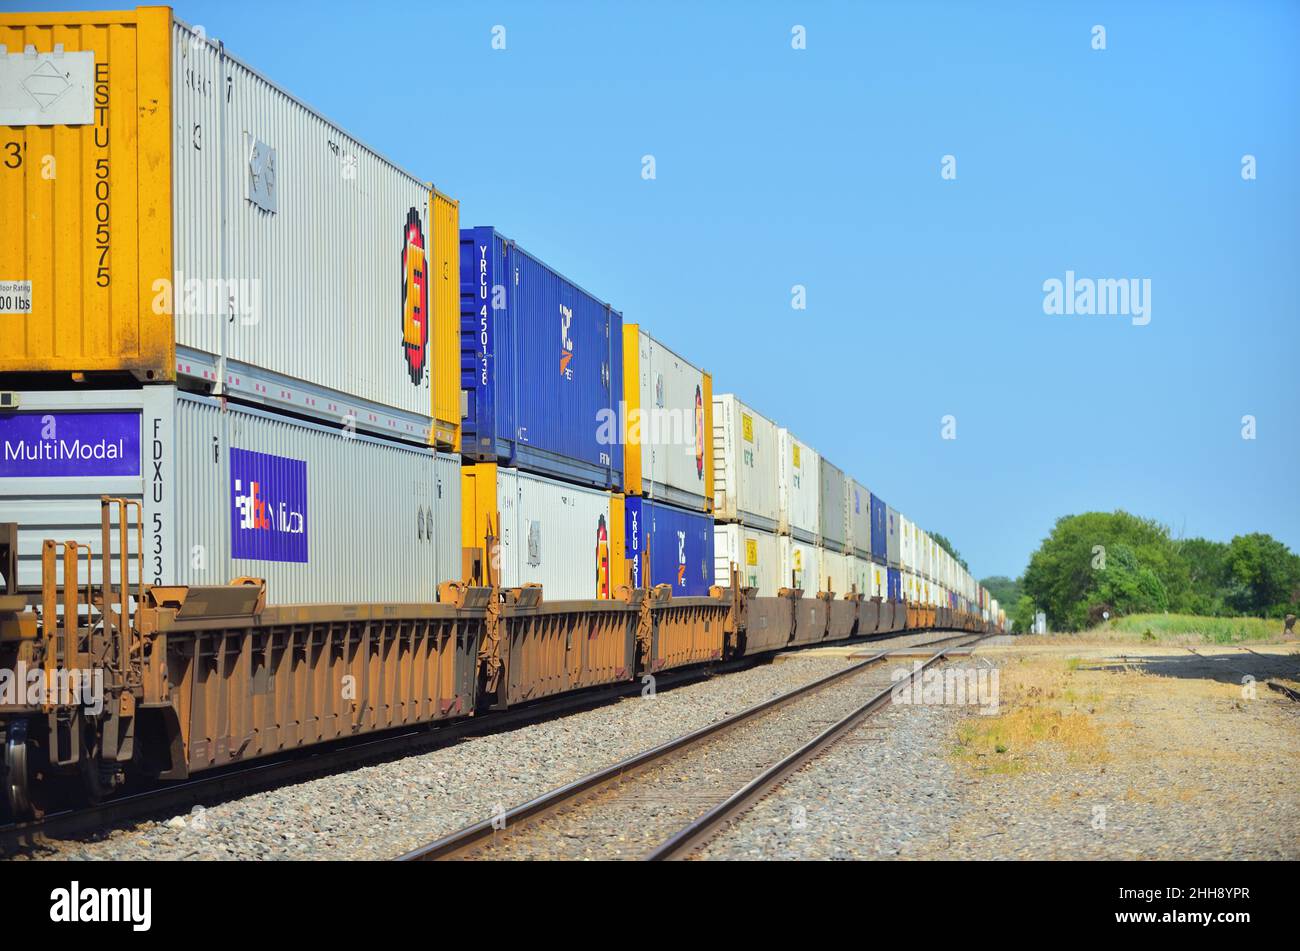 Chana, Illinois, États-Unis.Un train de marchandises intermodal du chemin de fer de Burlington Northern Santa Fe en dehors de Chicago qui traverse le nord-est rural de l'Illinois. Banque D'Images